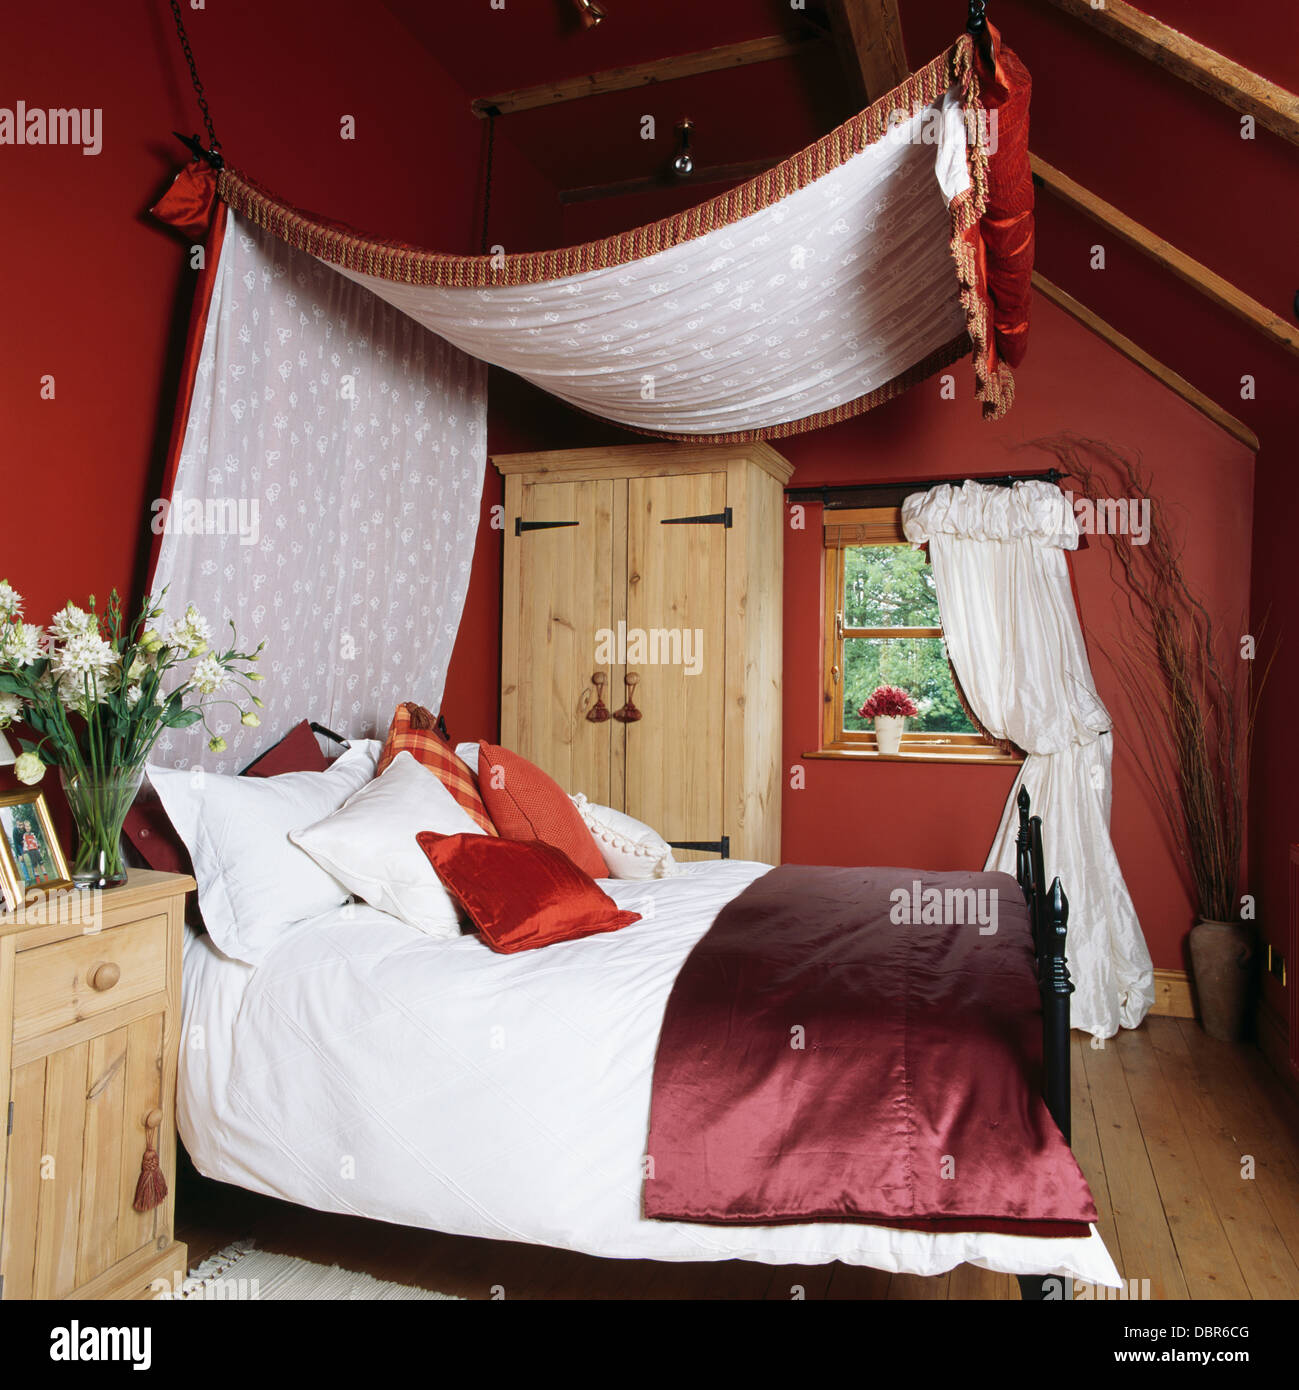 Tettoia con voile bianco rivestimento sopra il letto con il piumone bianco e raso rosso buttare in rosso mansarda camera da letto in cottage di campagna Foto Stock